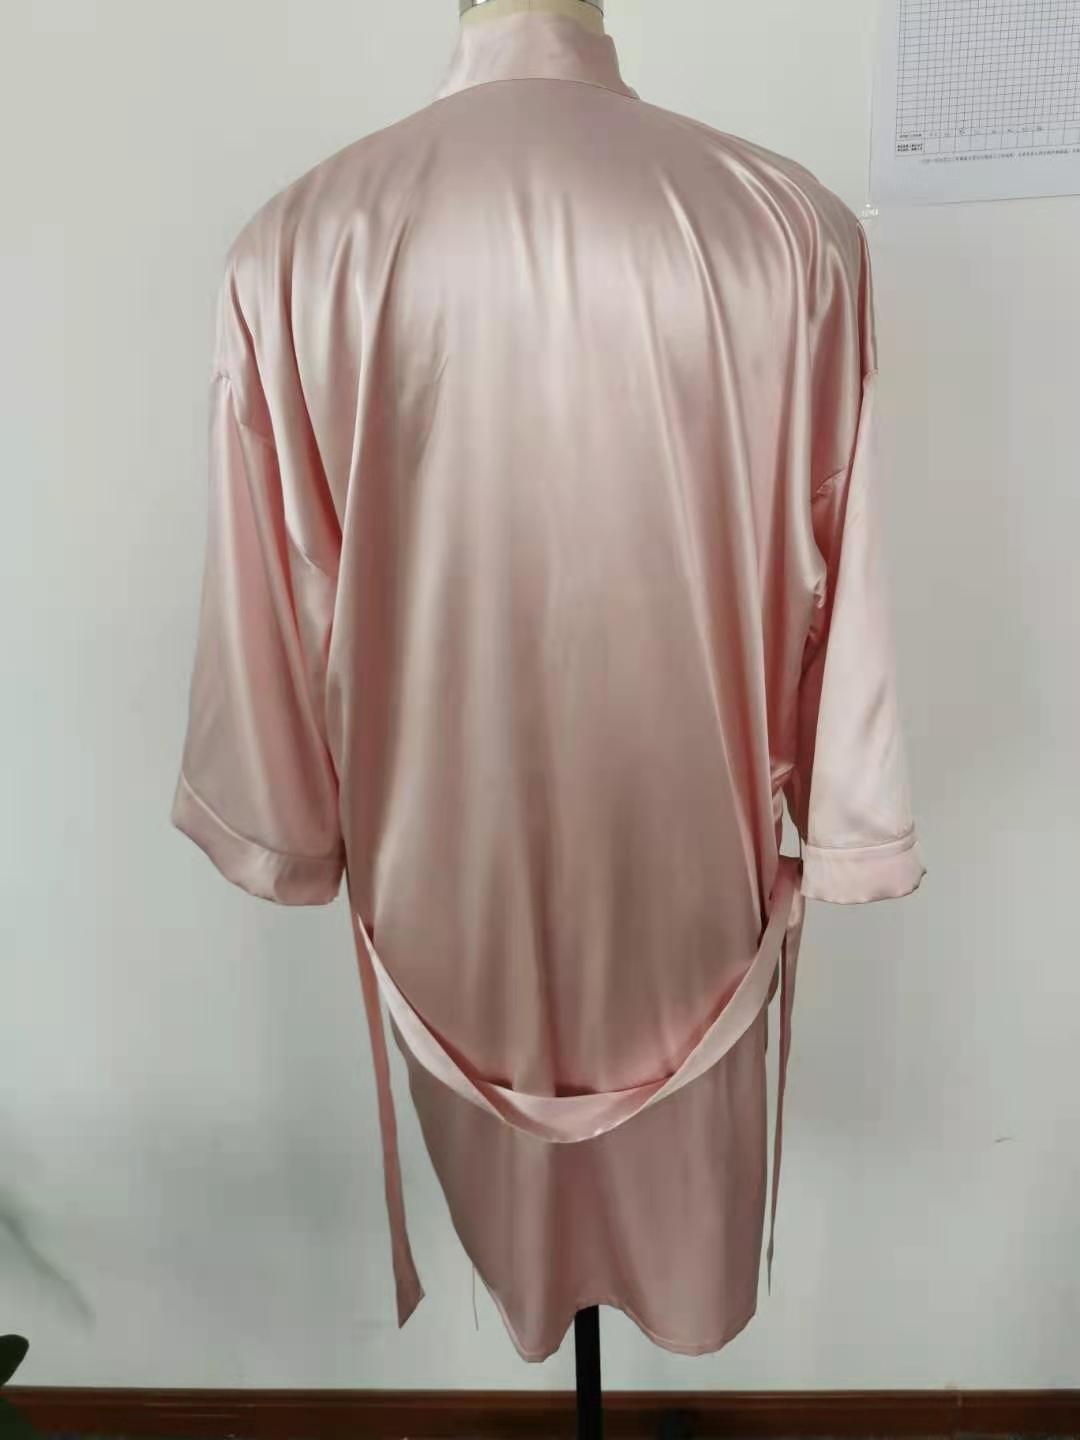 गुलाबी रंग में निजीकृत लंबे रेशमी साटन वस्त्र